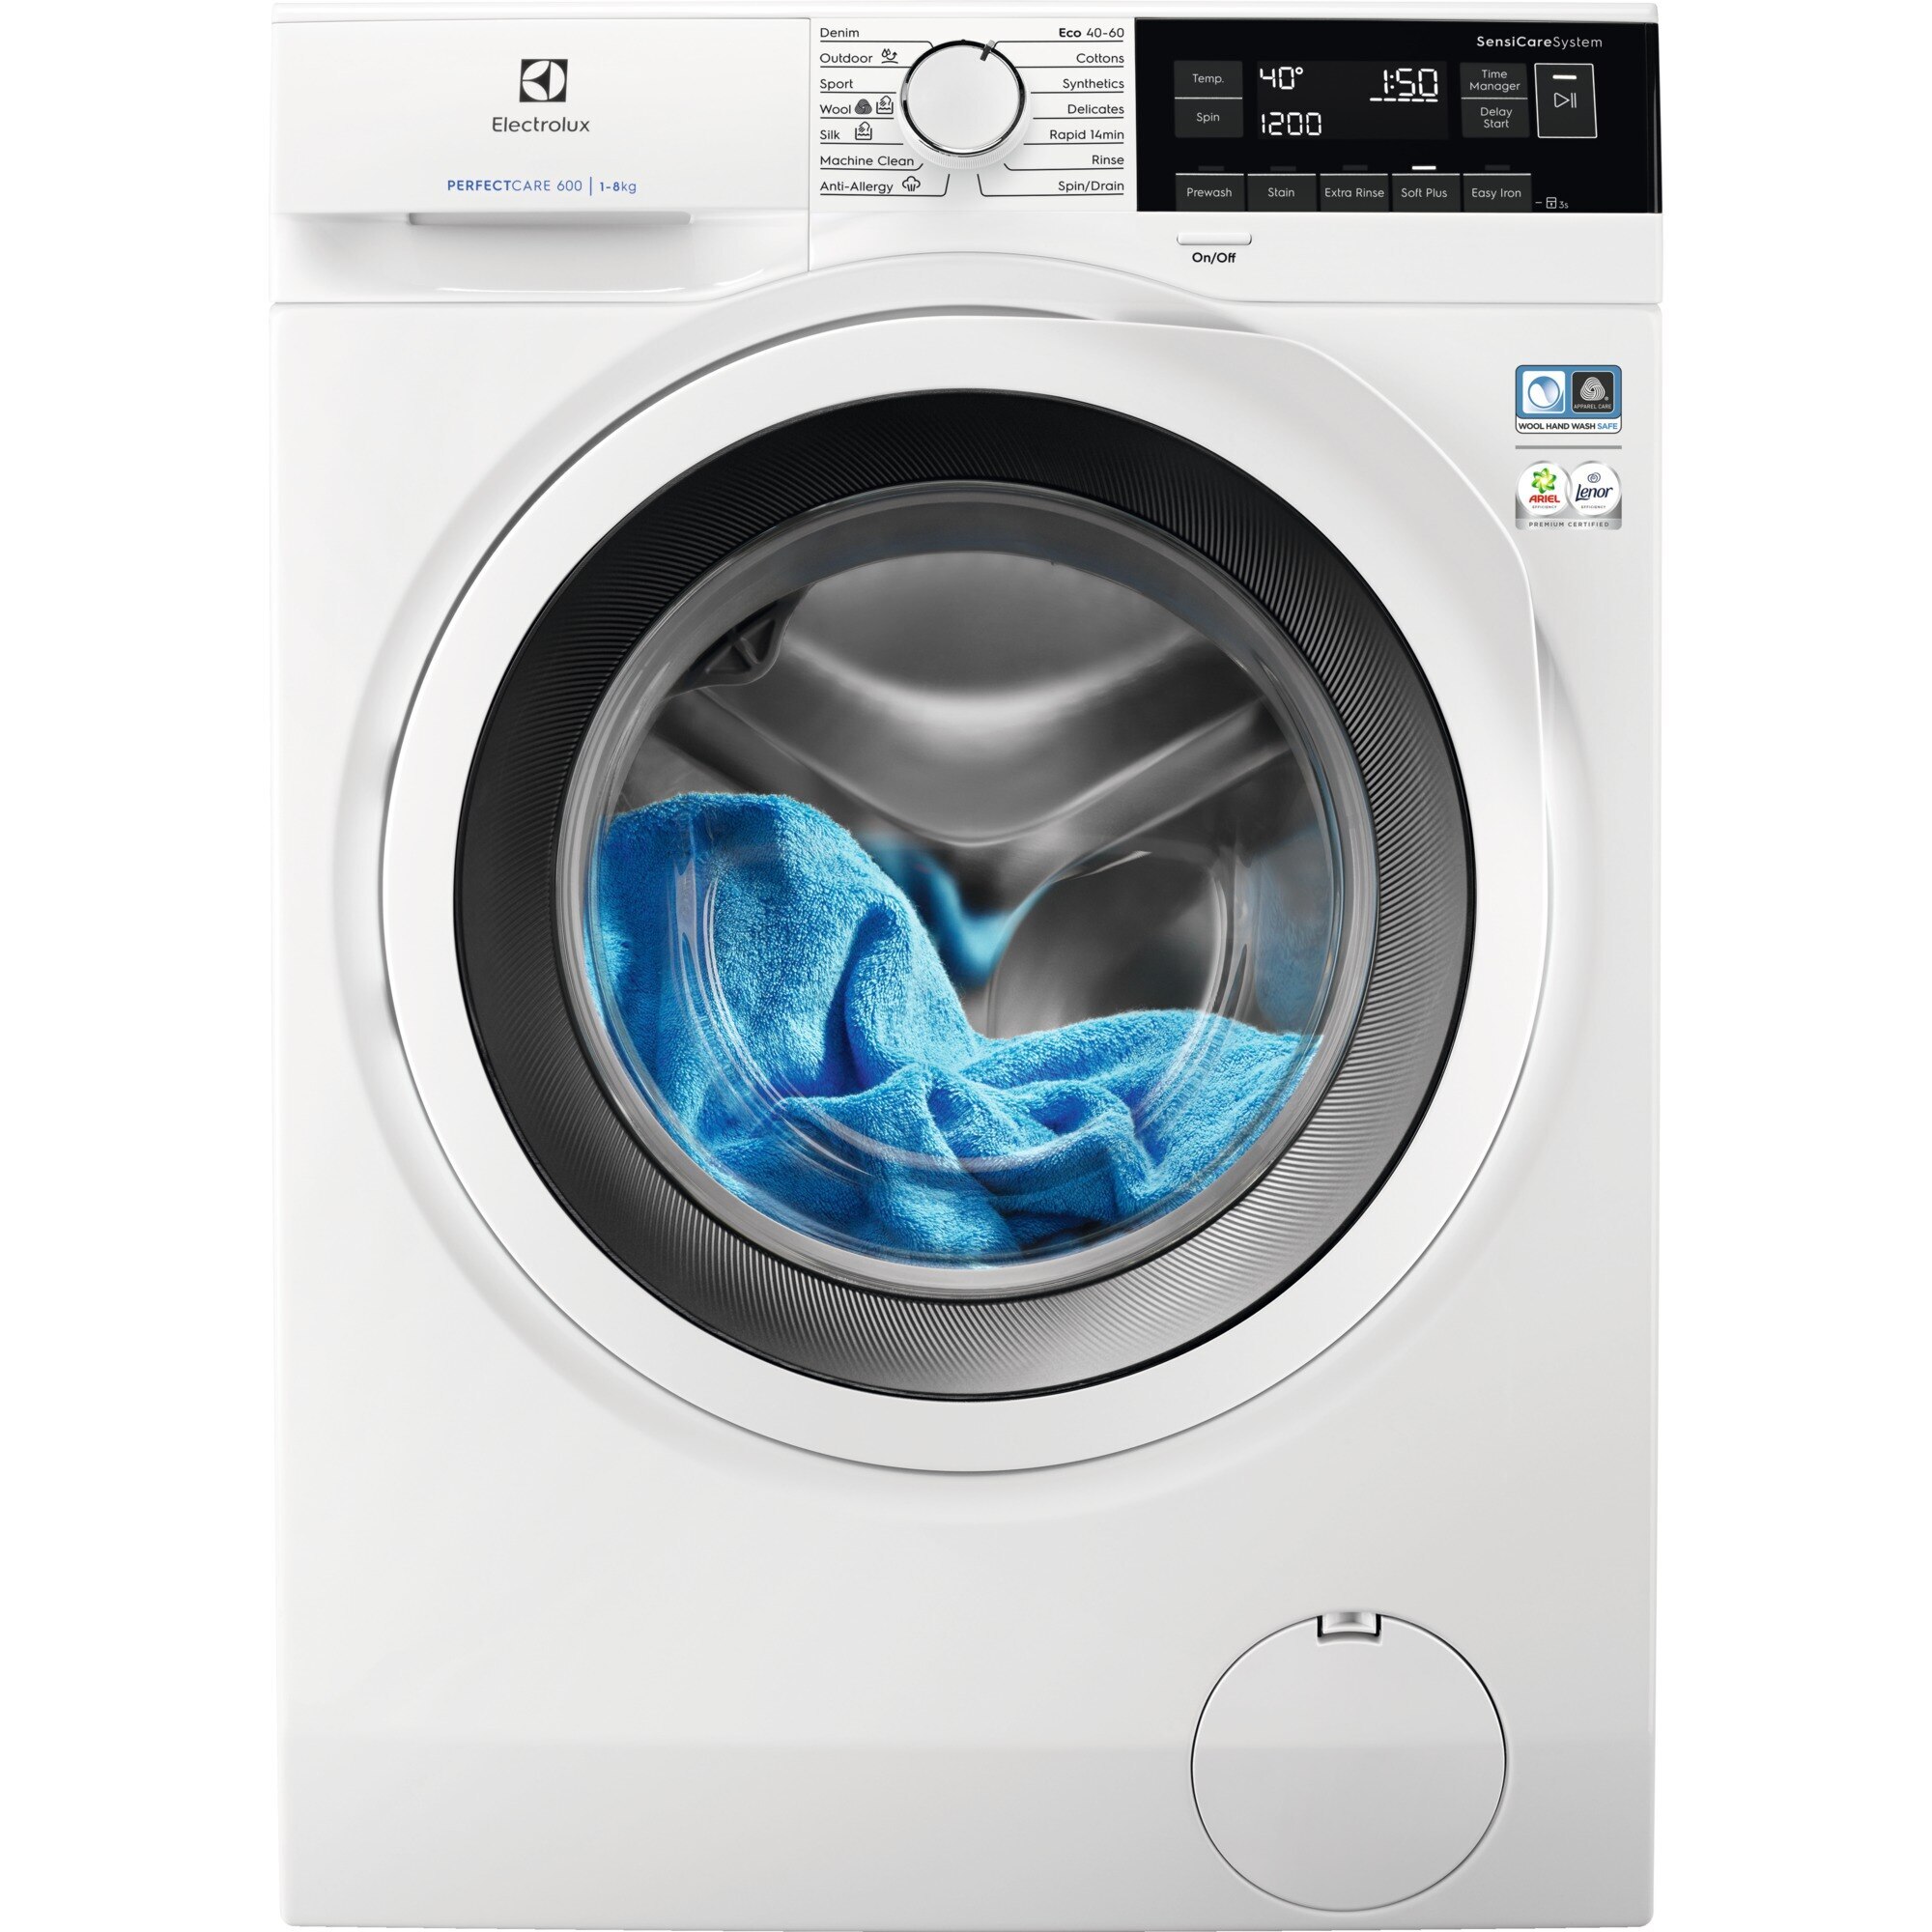 Køb Hvide Vaskemaskiner online til lav